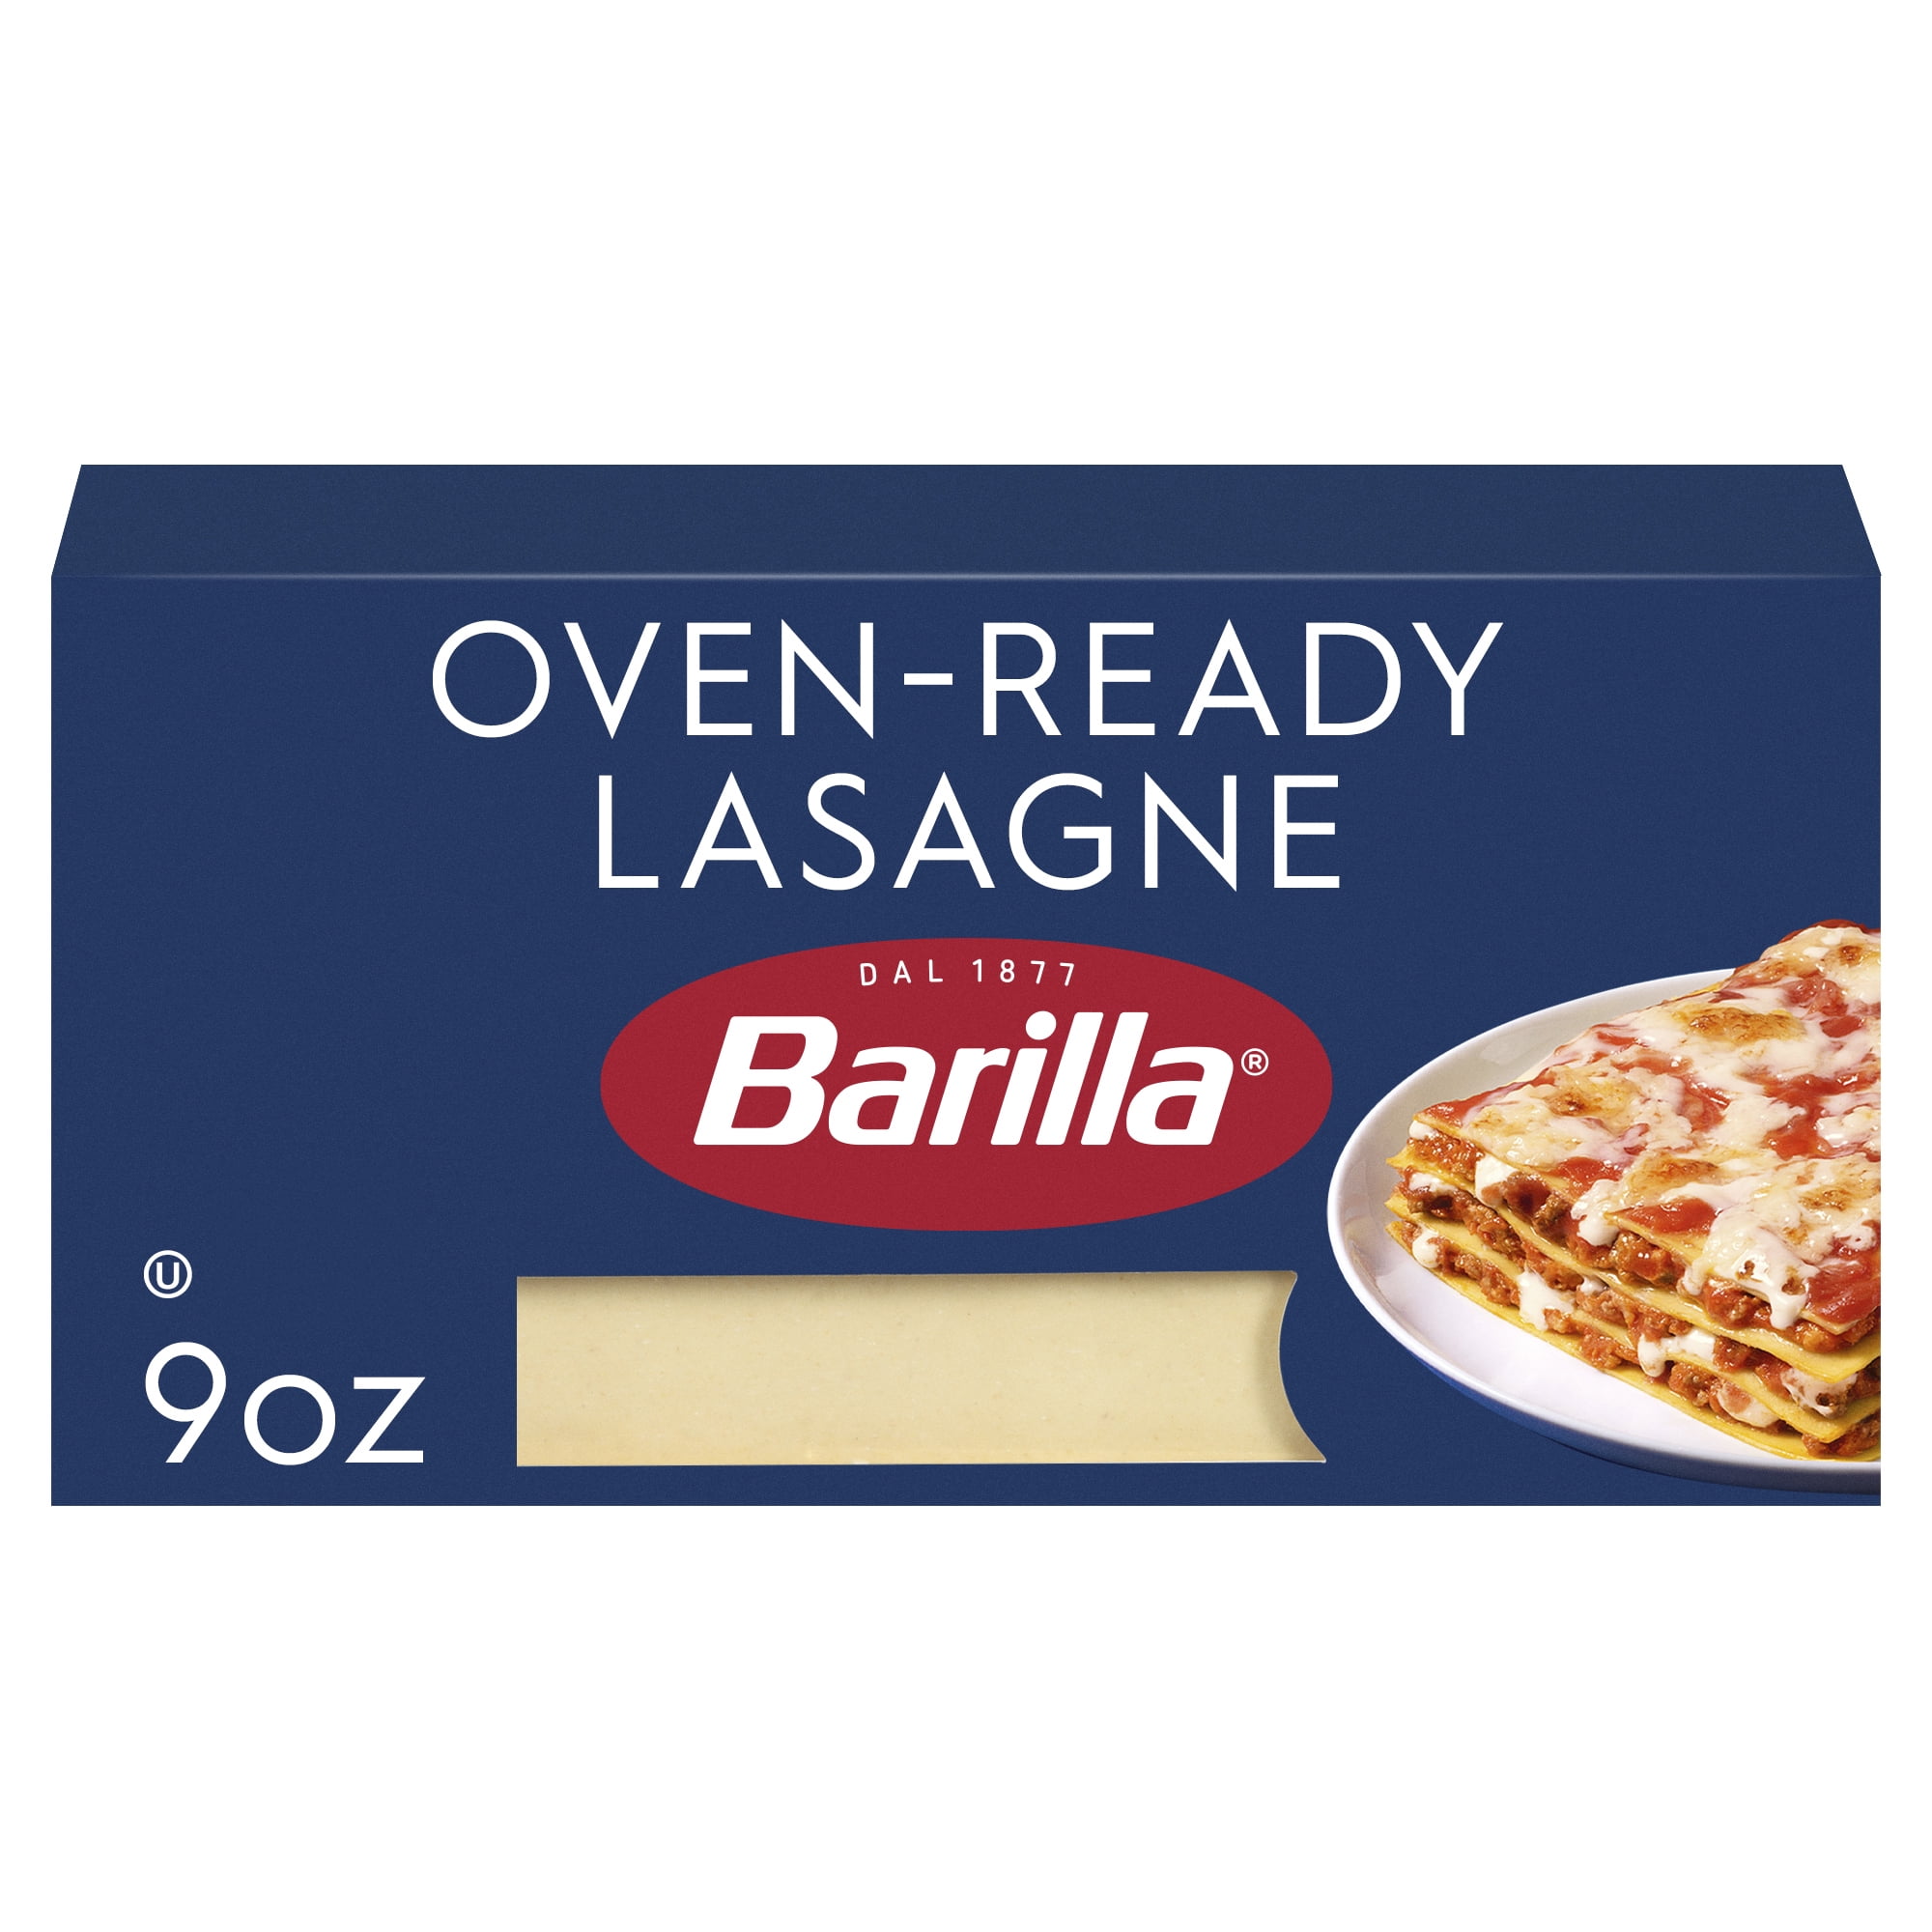 Barilla Classic Oven Ready Lasagne